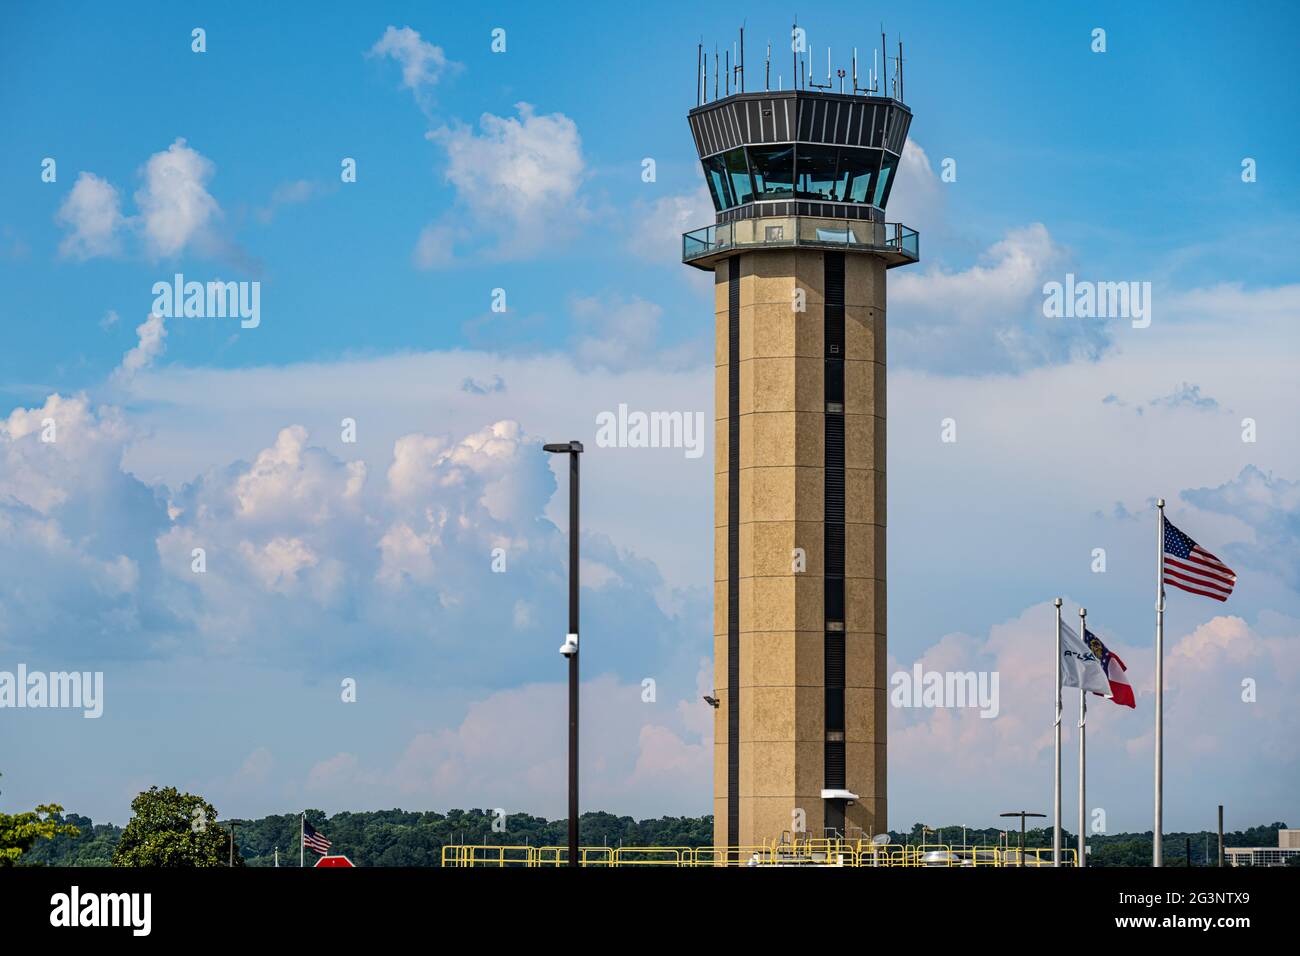 Tour de contrôle de la circulation aérienne à l'aéroport de Dekalb-Peachtree (PDK), communément appelé Peachtree-Dekalb, dans le métro d'Atlanta, en Géorgie. (ÉTATS-UNIS) Banque D'Images